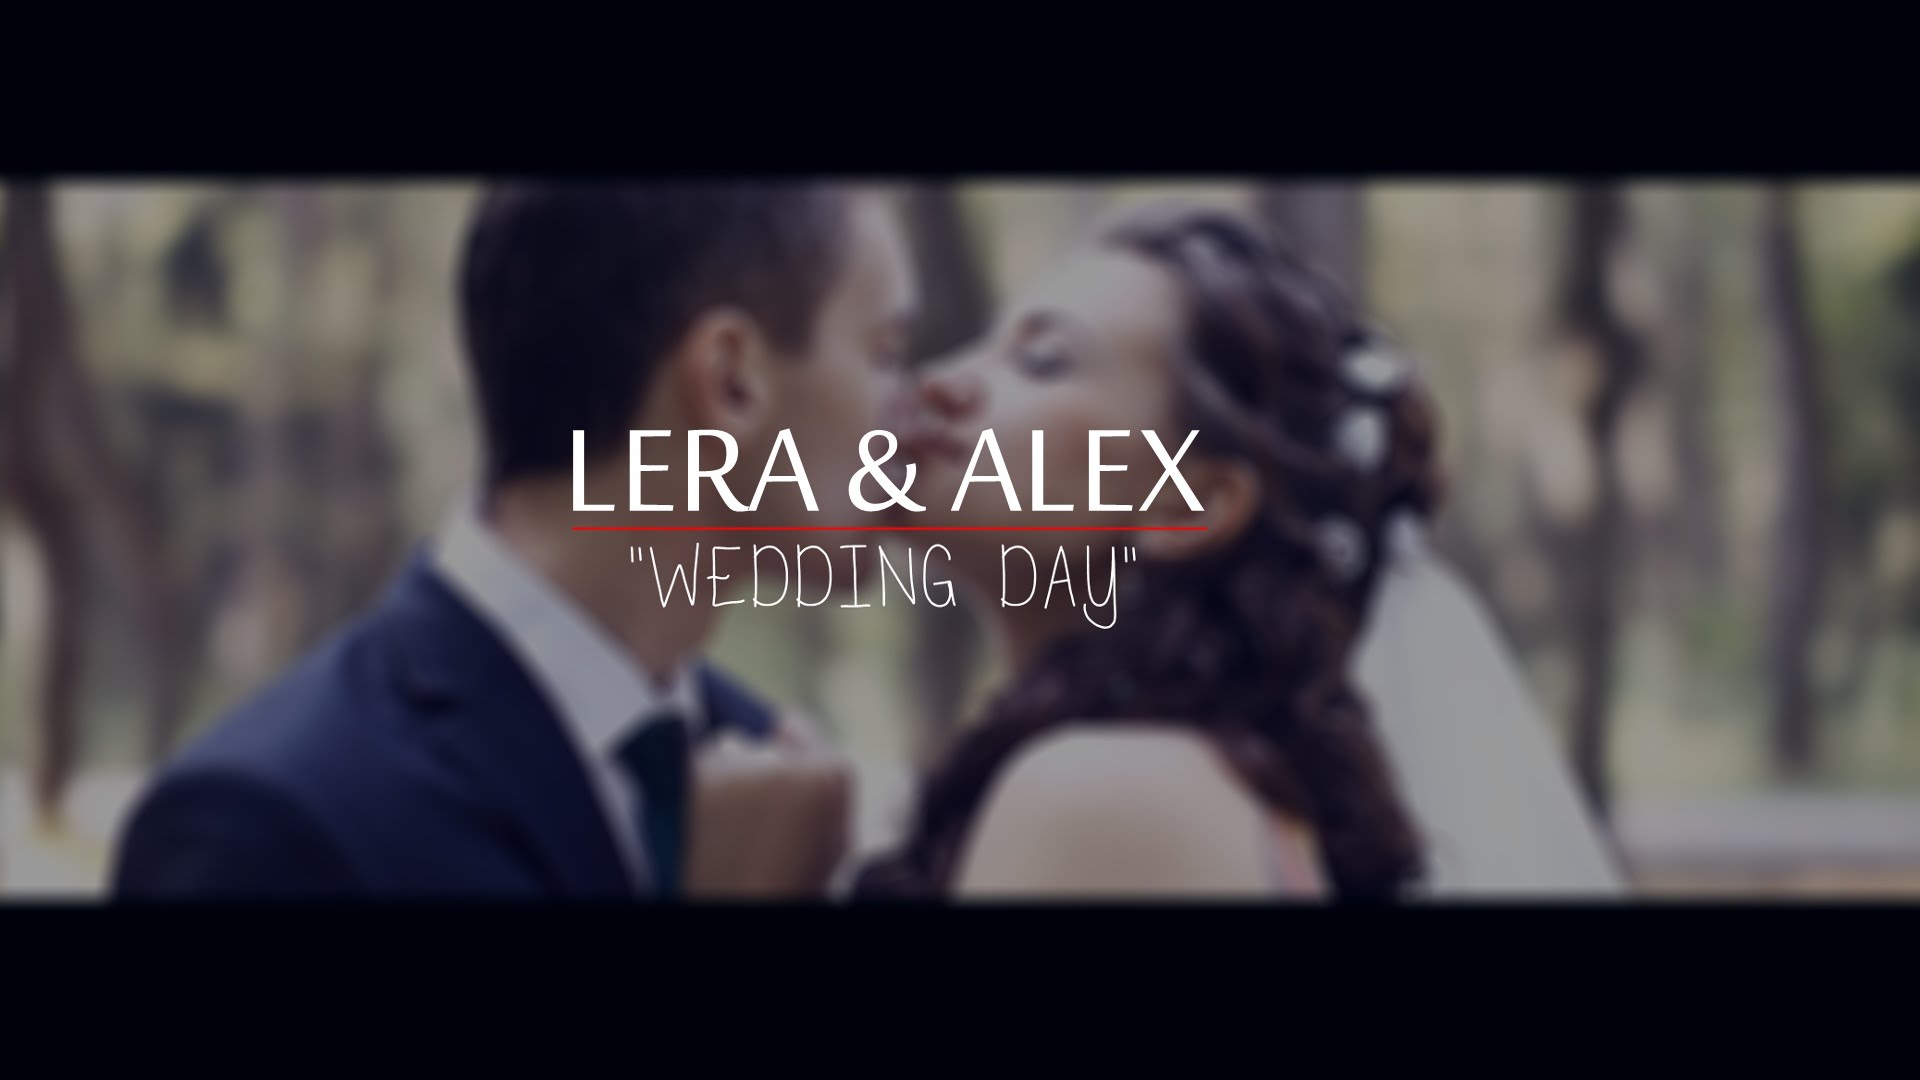 Wedding Day - Lera & Alex